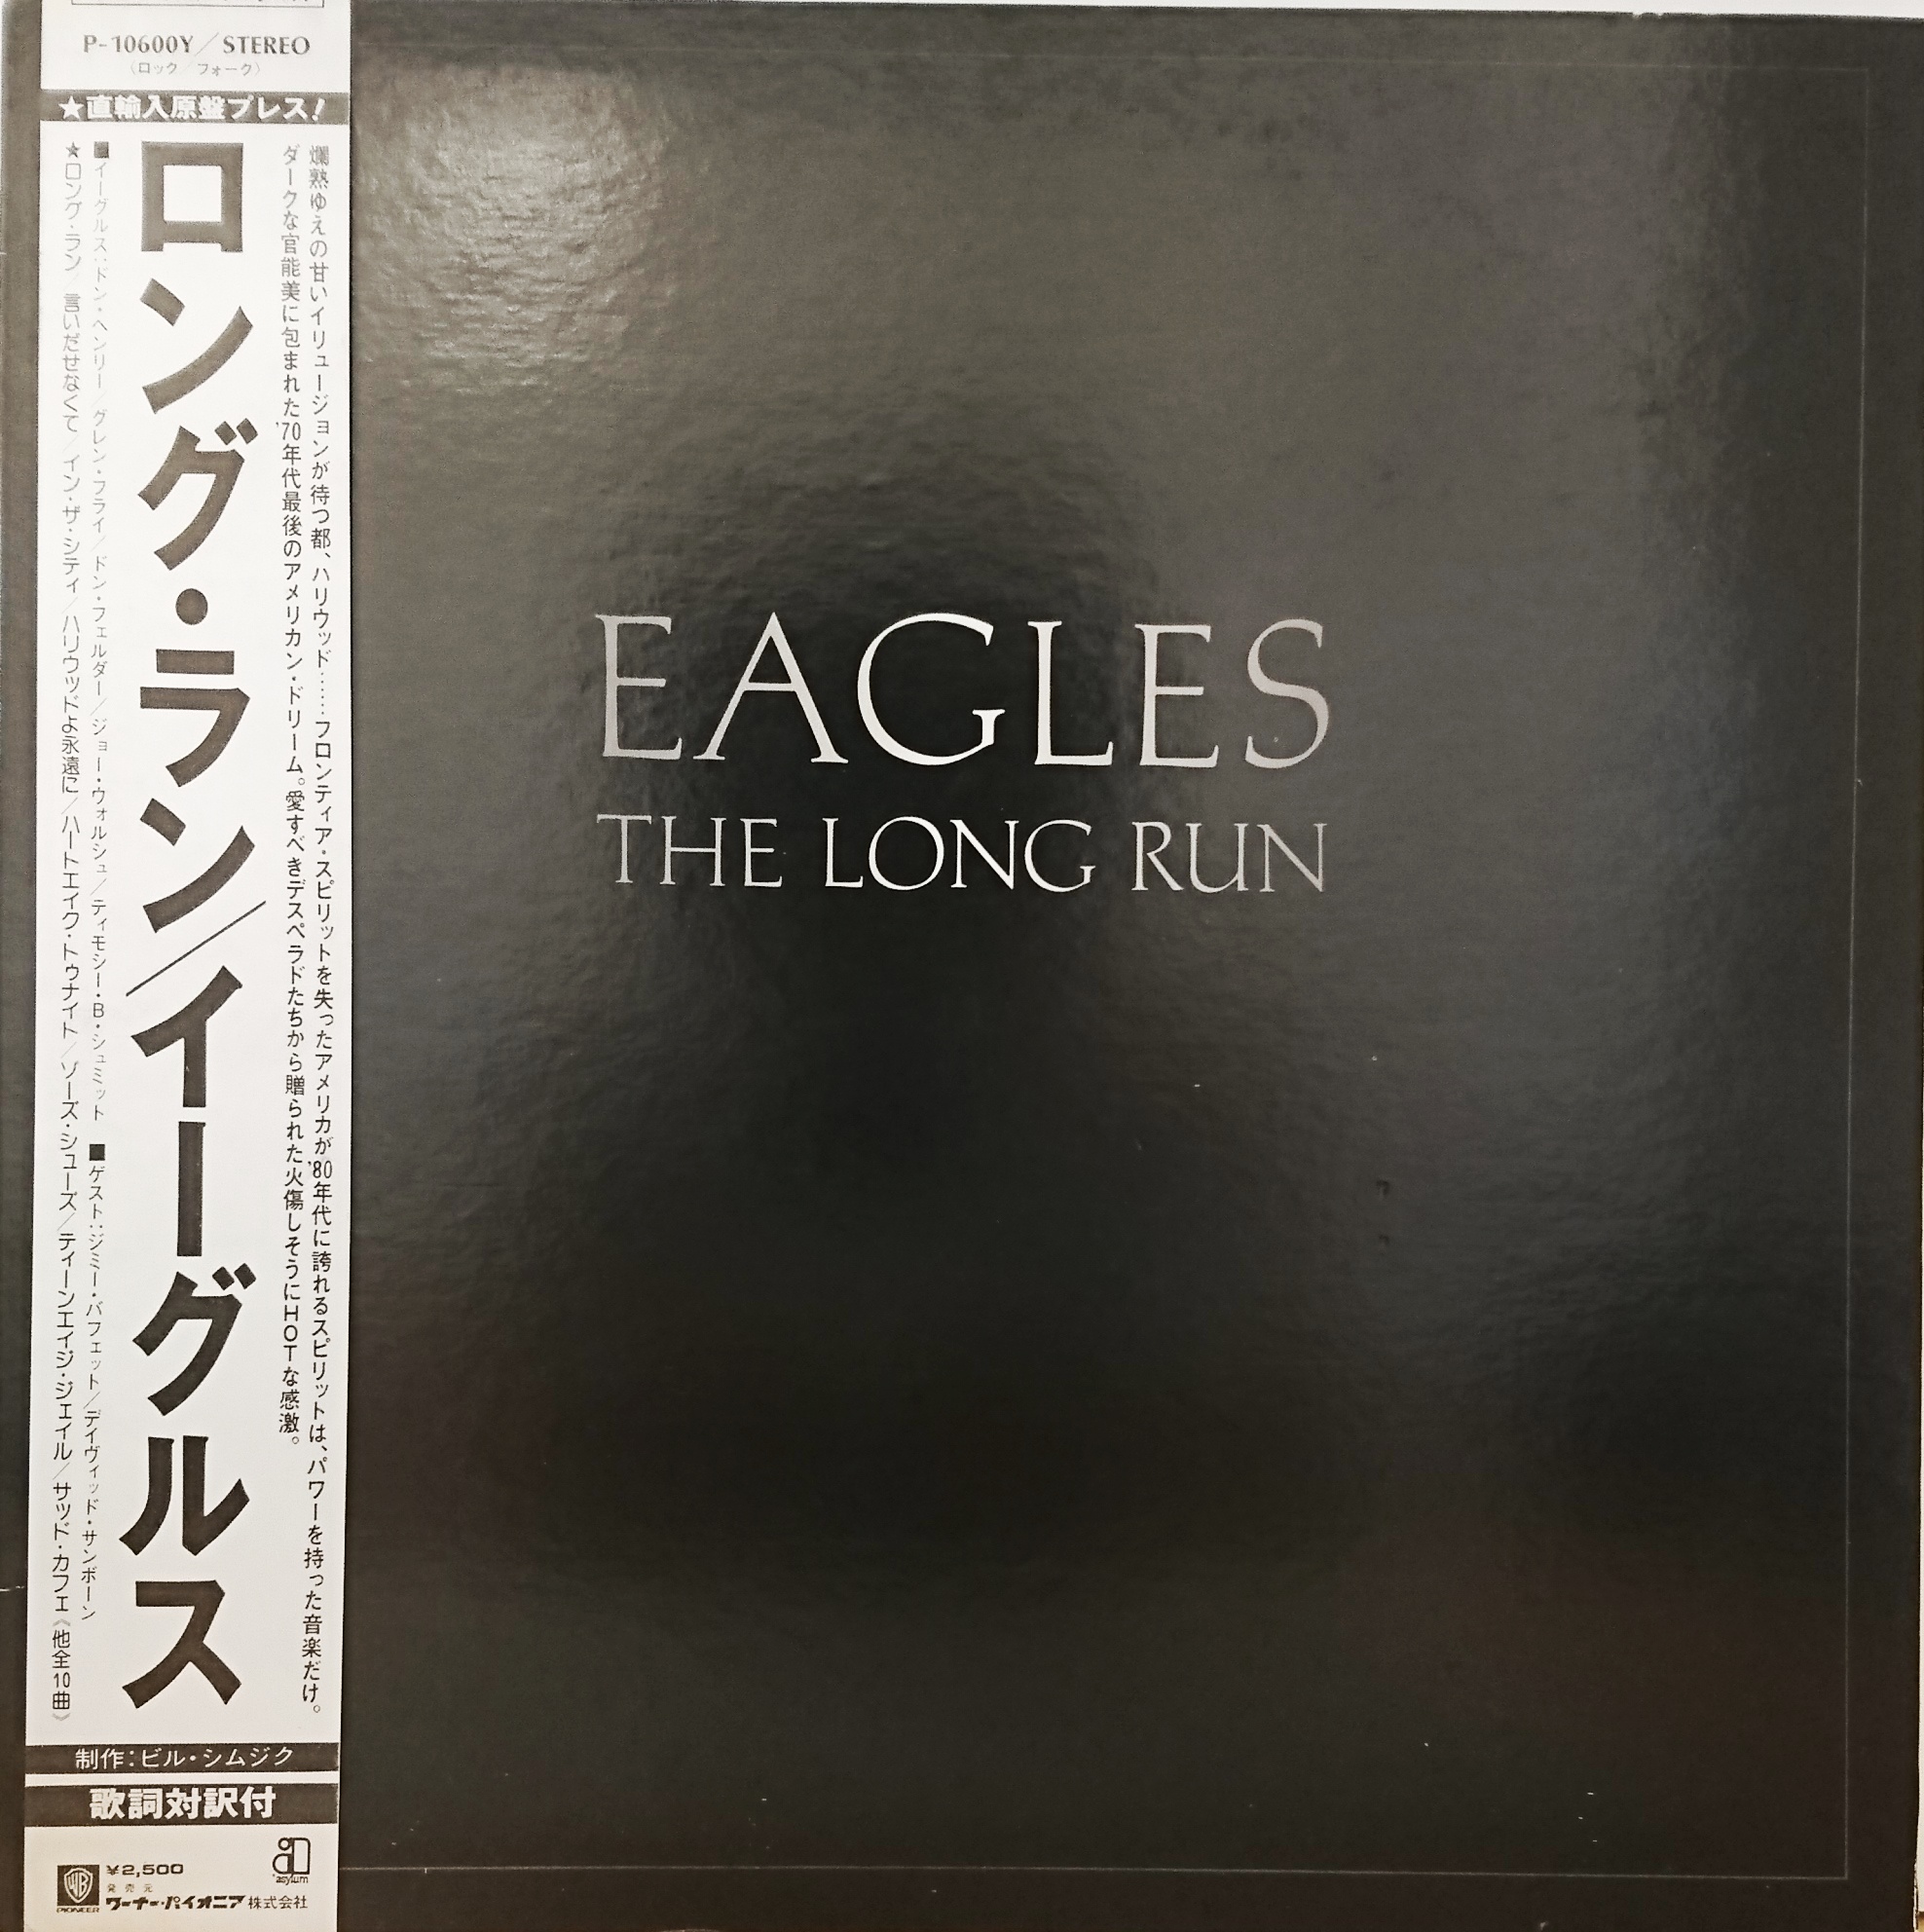 Eagles The Long Run イーグルス ザ ロングラン 中古レコード通販 買取のアカル レコーズ